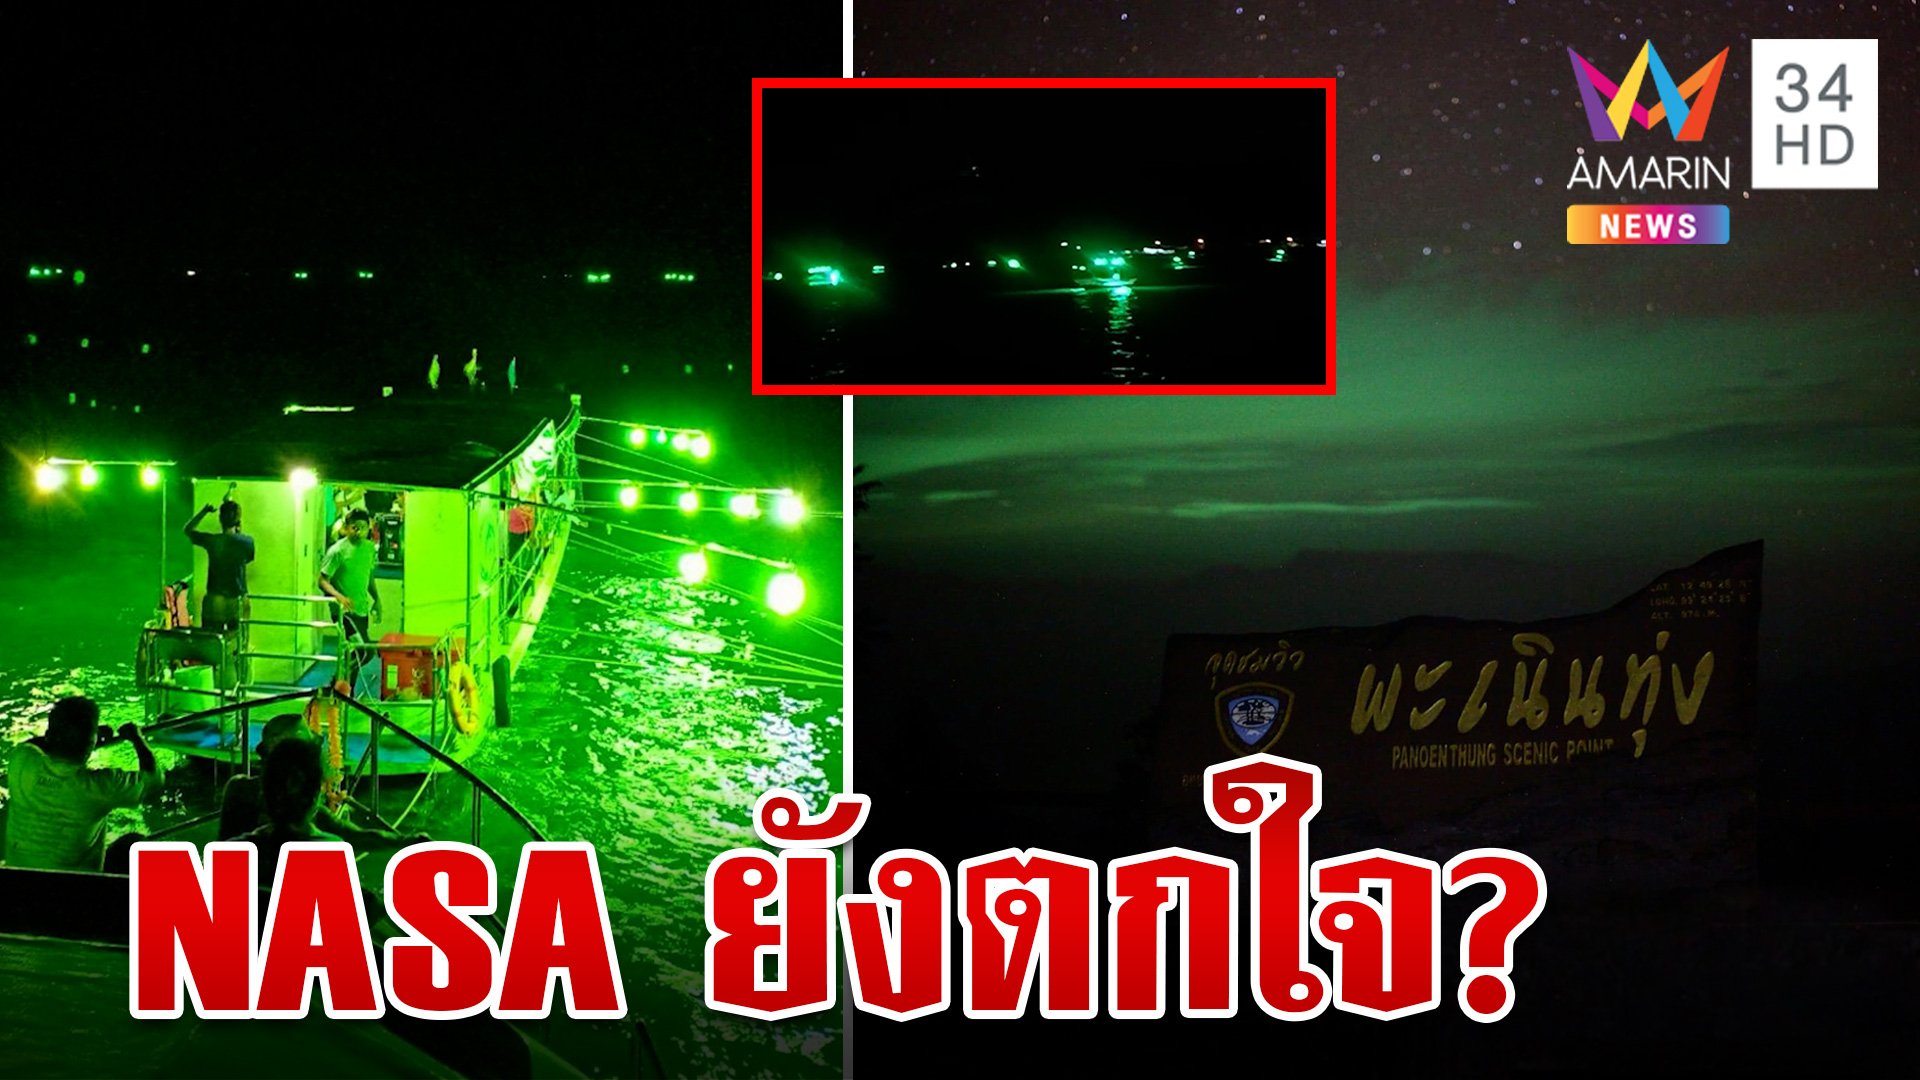 พิสูจน์แสงเหนือเมืองไทยเหนือน่านฟ้าเขาพะเนินทุ่ง มนุษย์อวกาศตกใจที่แท้แสงไฟเรือไดหมึก | ทุบโต๊ะข่าว | 4 พ.ย. 66 | AMARIN TVHD34